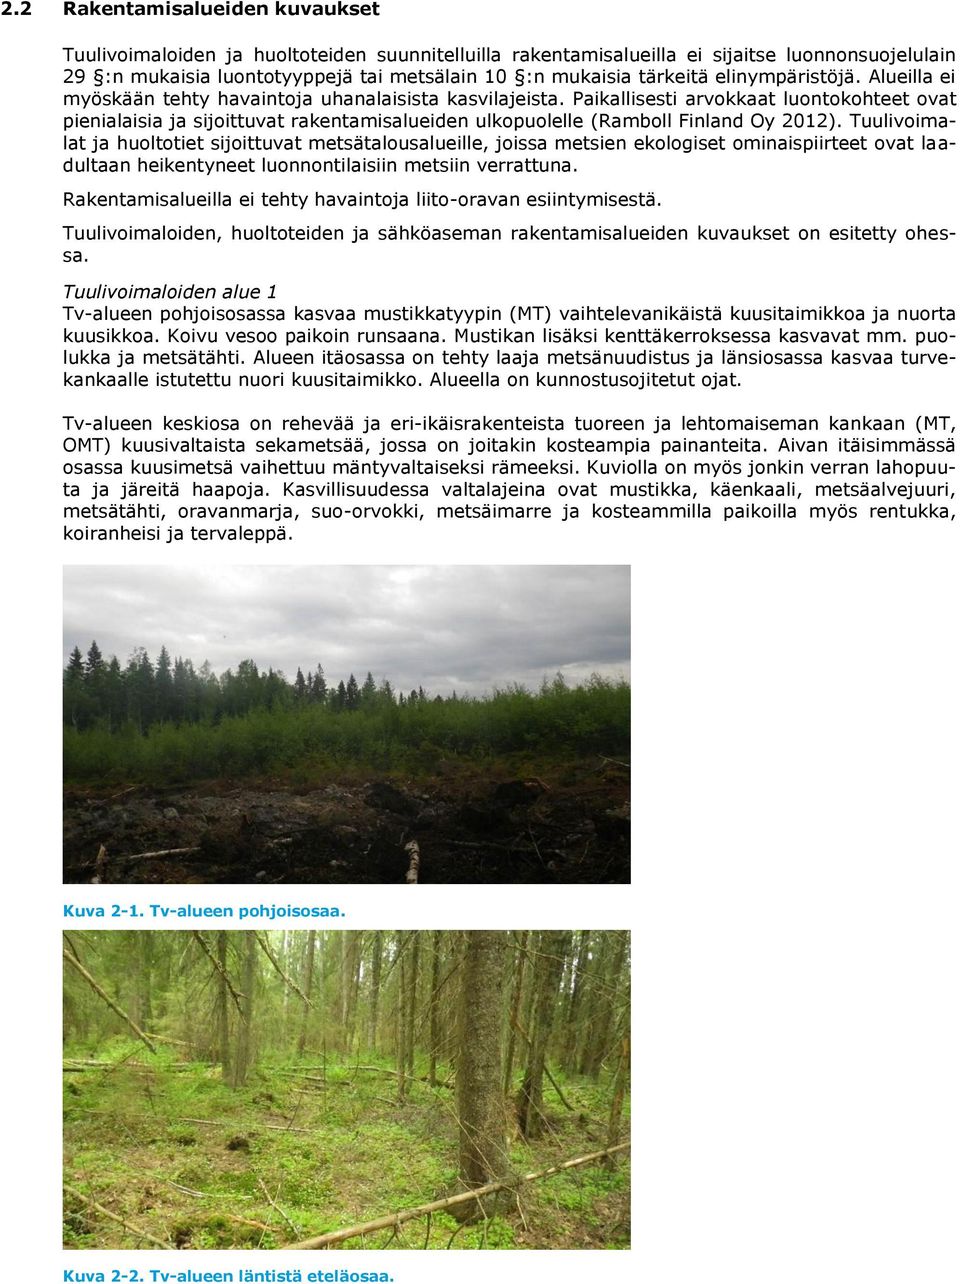 Paikallisesti arvokkaat luontokohteet ovat pienialaisia ja sijoittuvat rakentamisalueiden ulkopuolelle (Ramboll Finland Oy 2012).